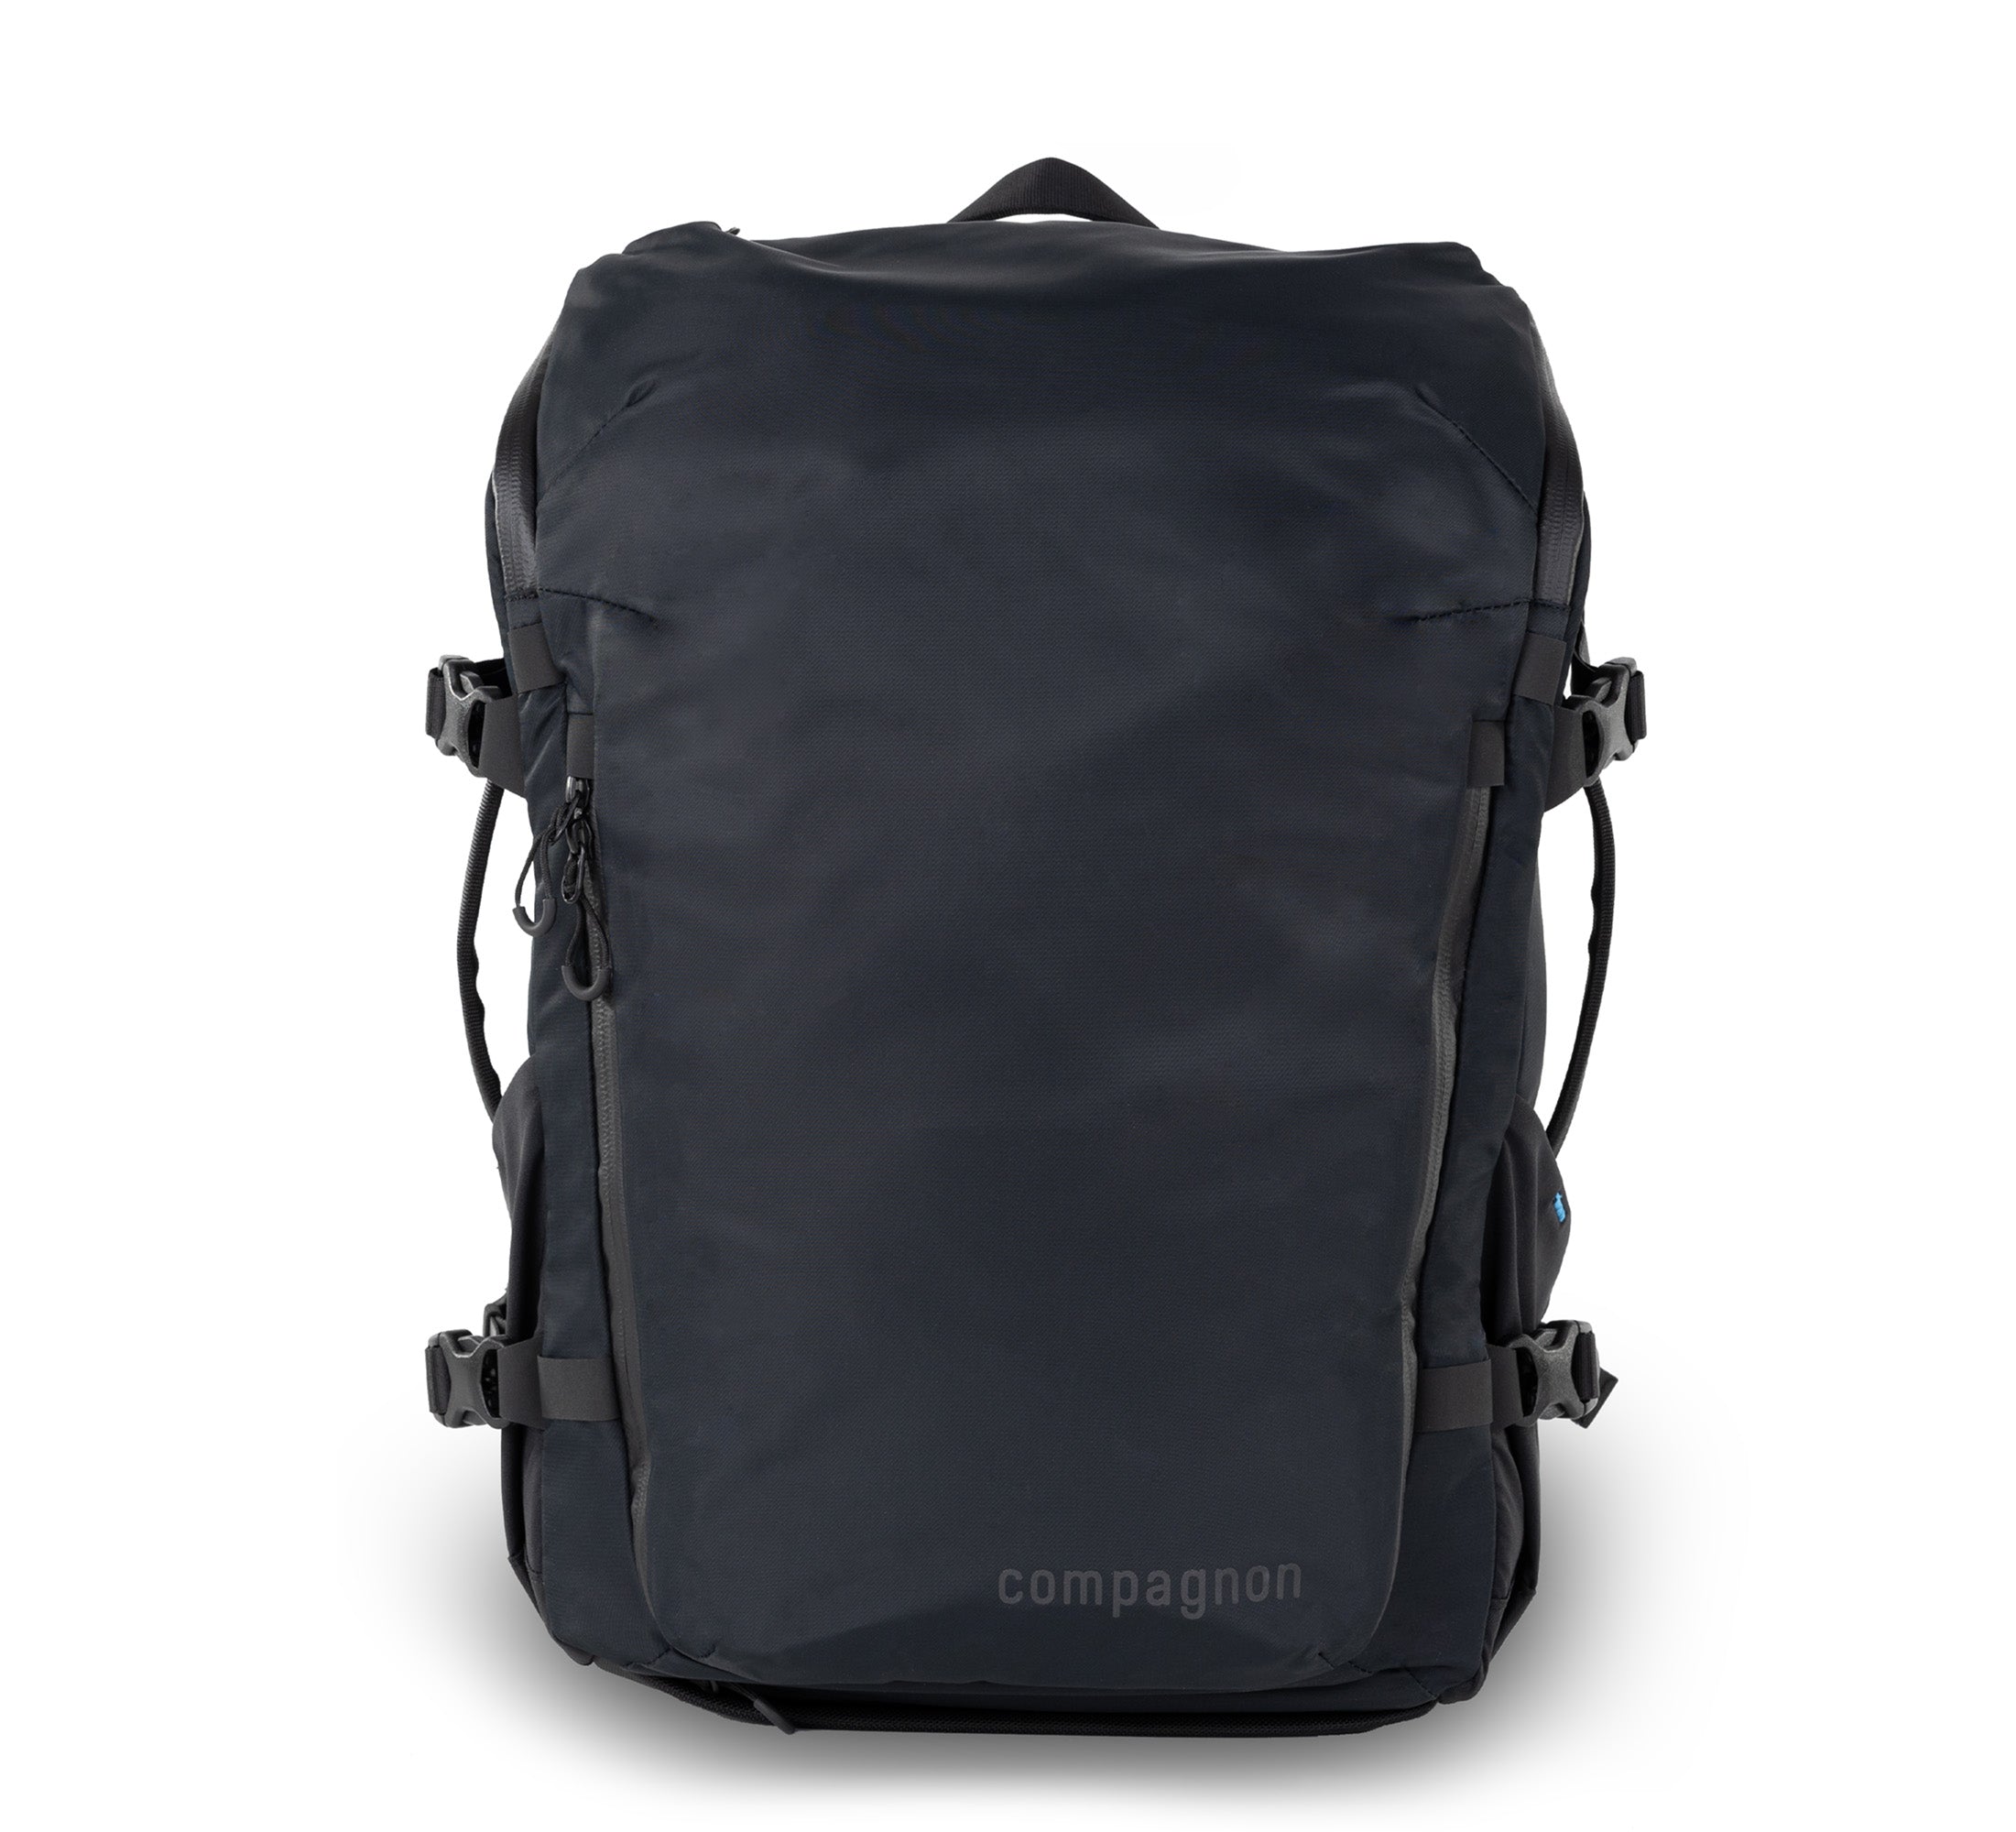 Adapt backpack 25L - complete set